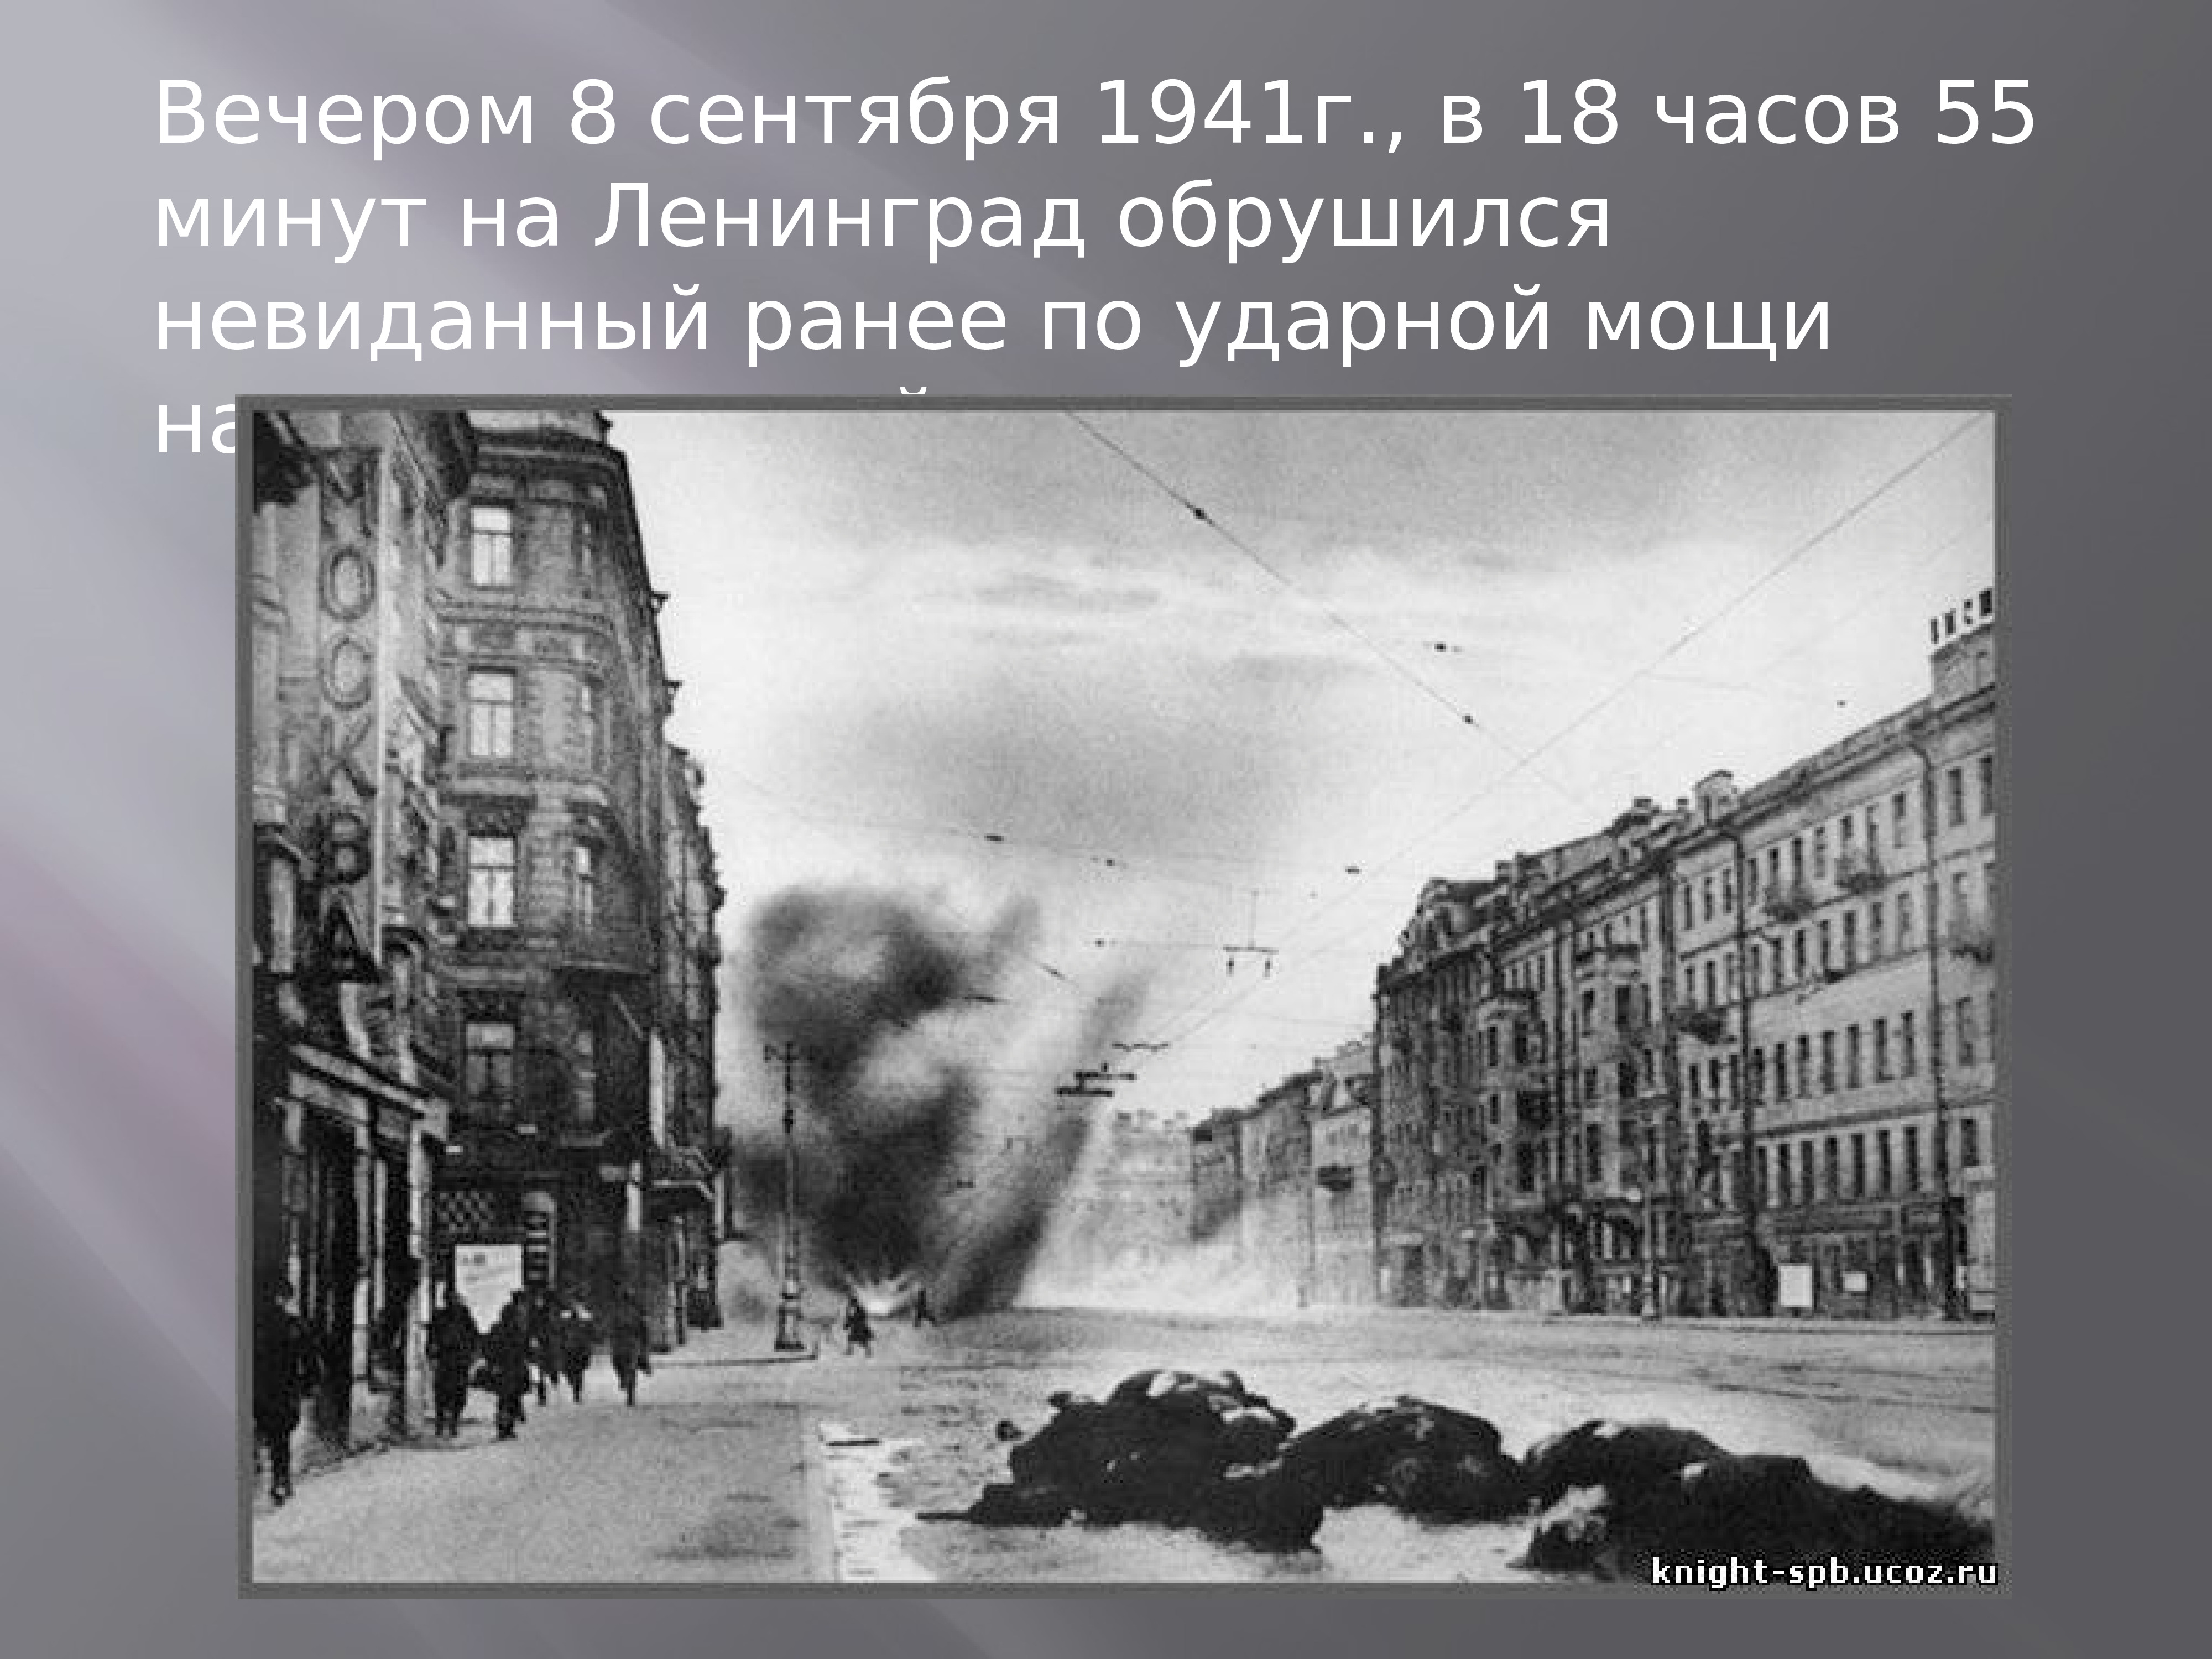 Нападение ленинграда. Ленинград 1945. Ленинград город 1941 года немцы.